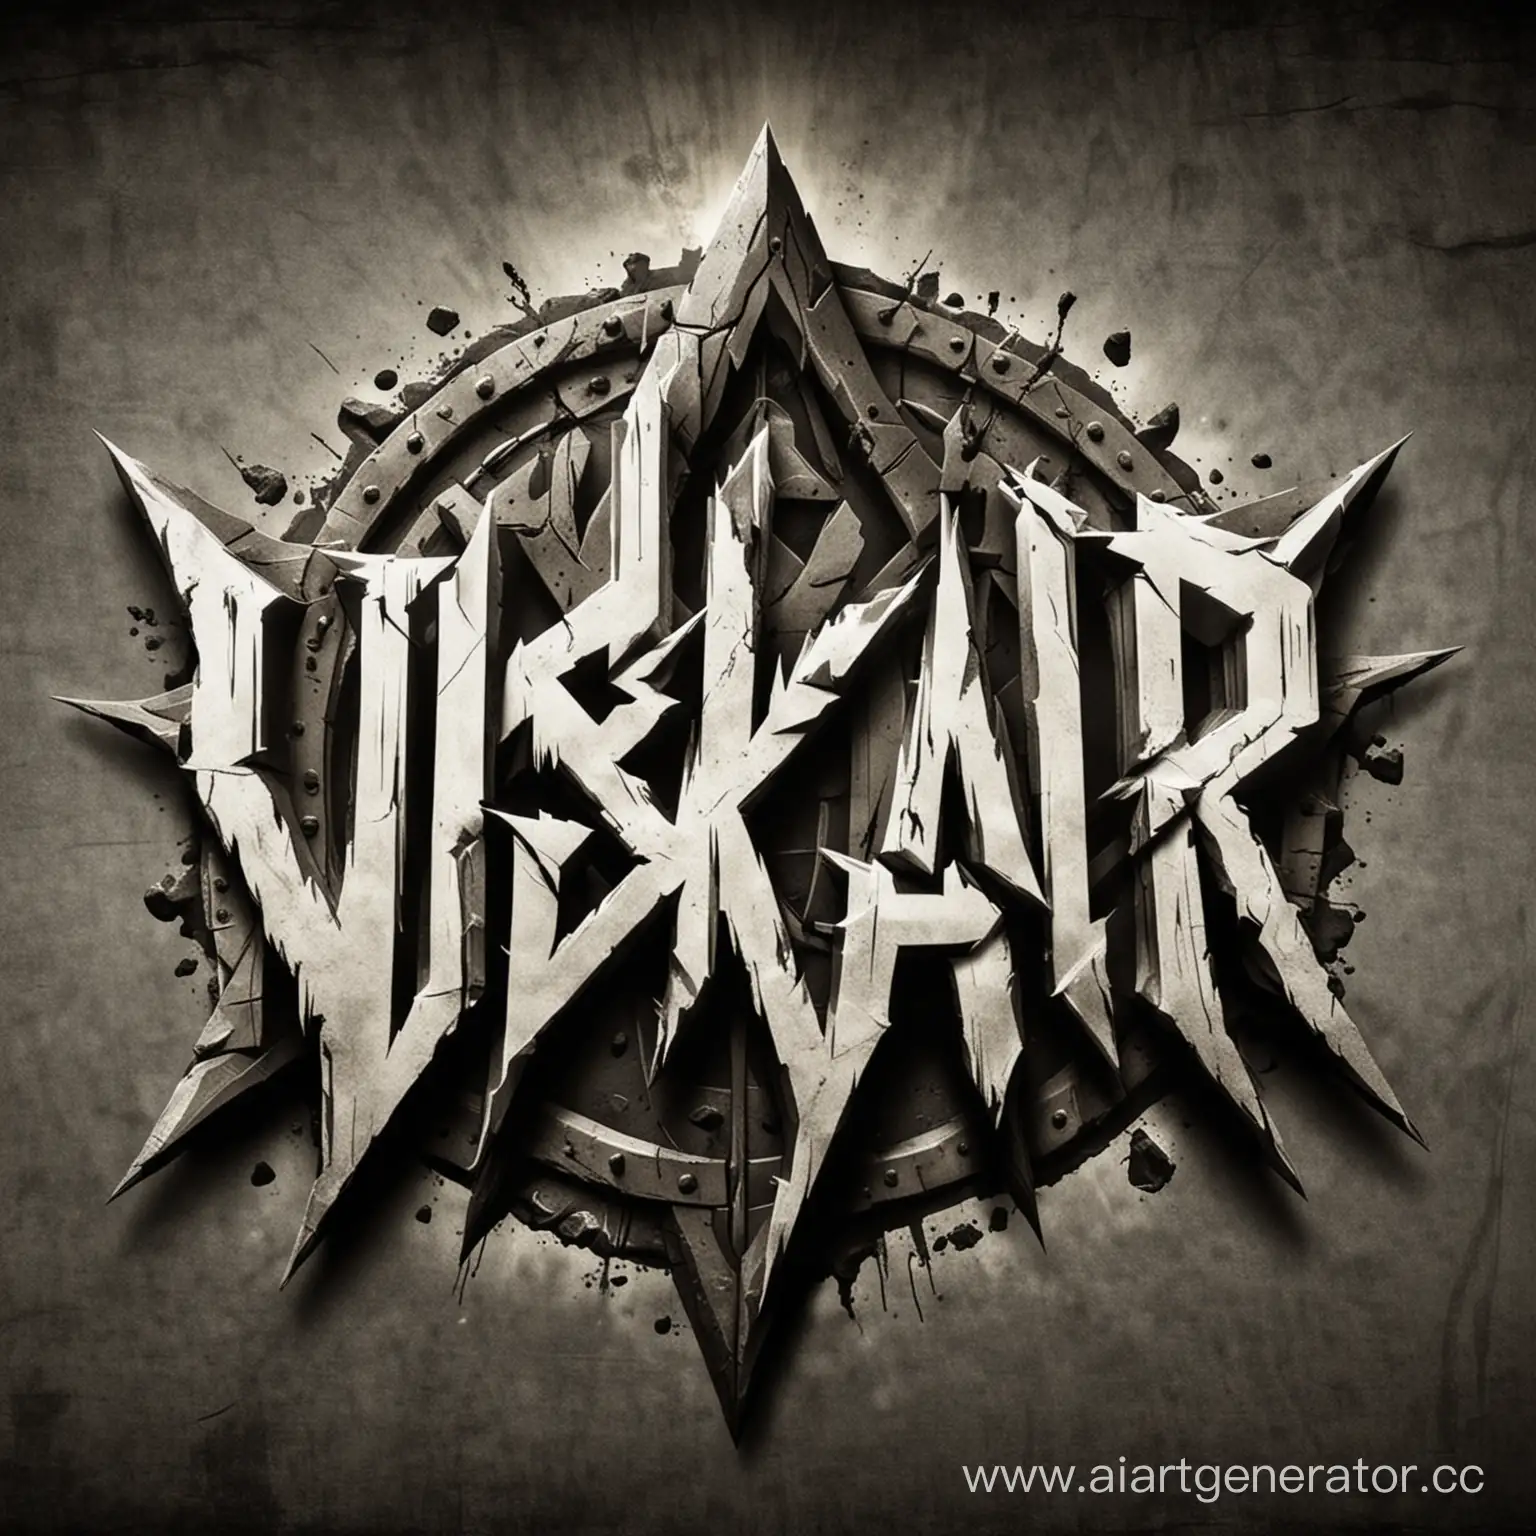 Логотип рок группы "ViSKaR"